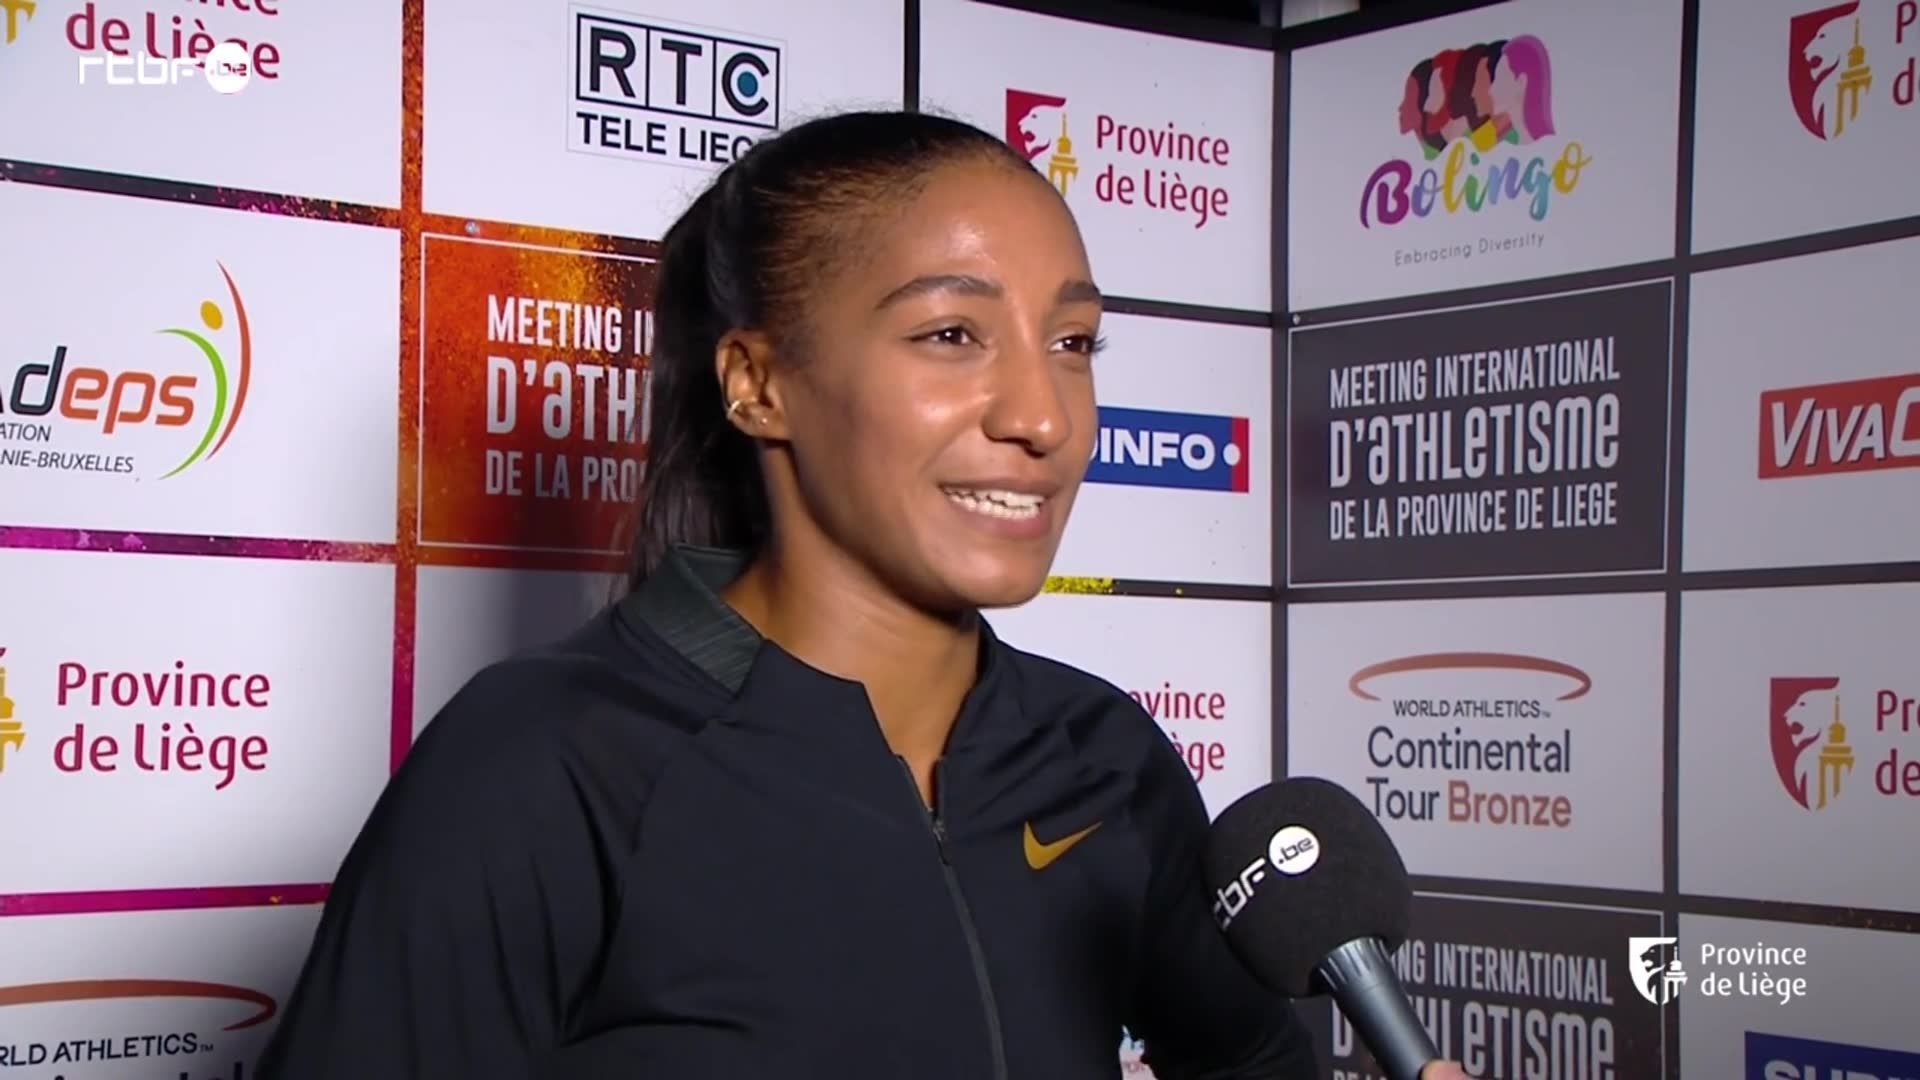 Athlétisme : le nouvel entraîneur de Nafissatou Thiam est connu - RTC Télé  Liège